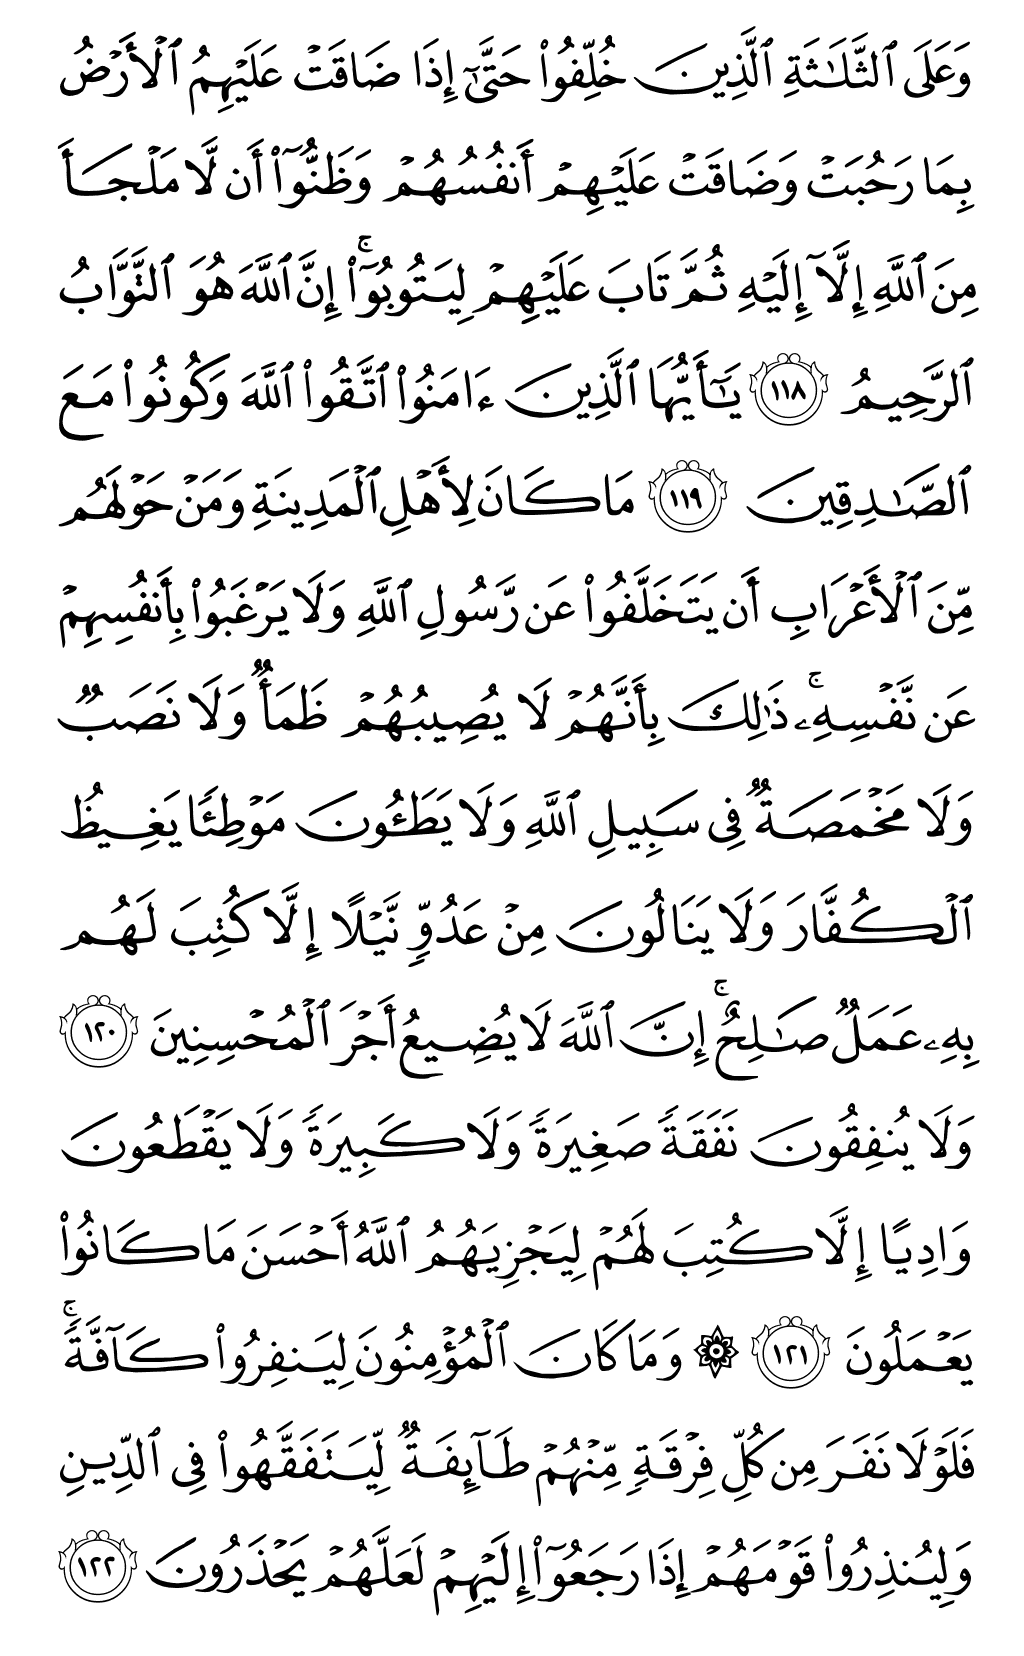 الصفحة رقم 206 من القرآن الكريم